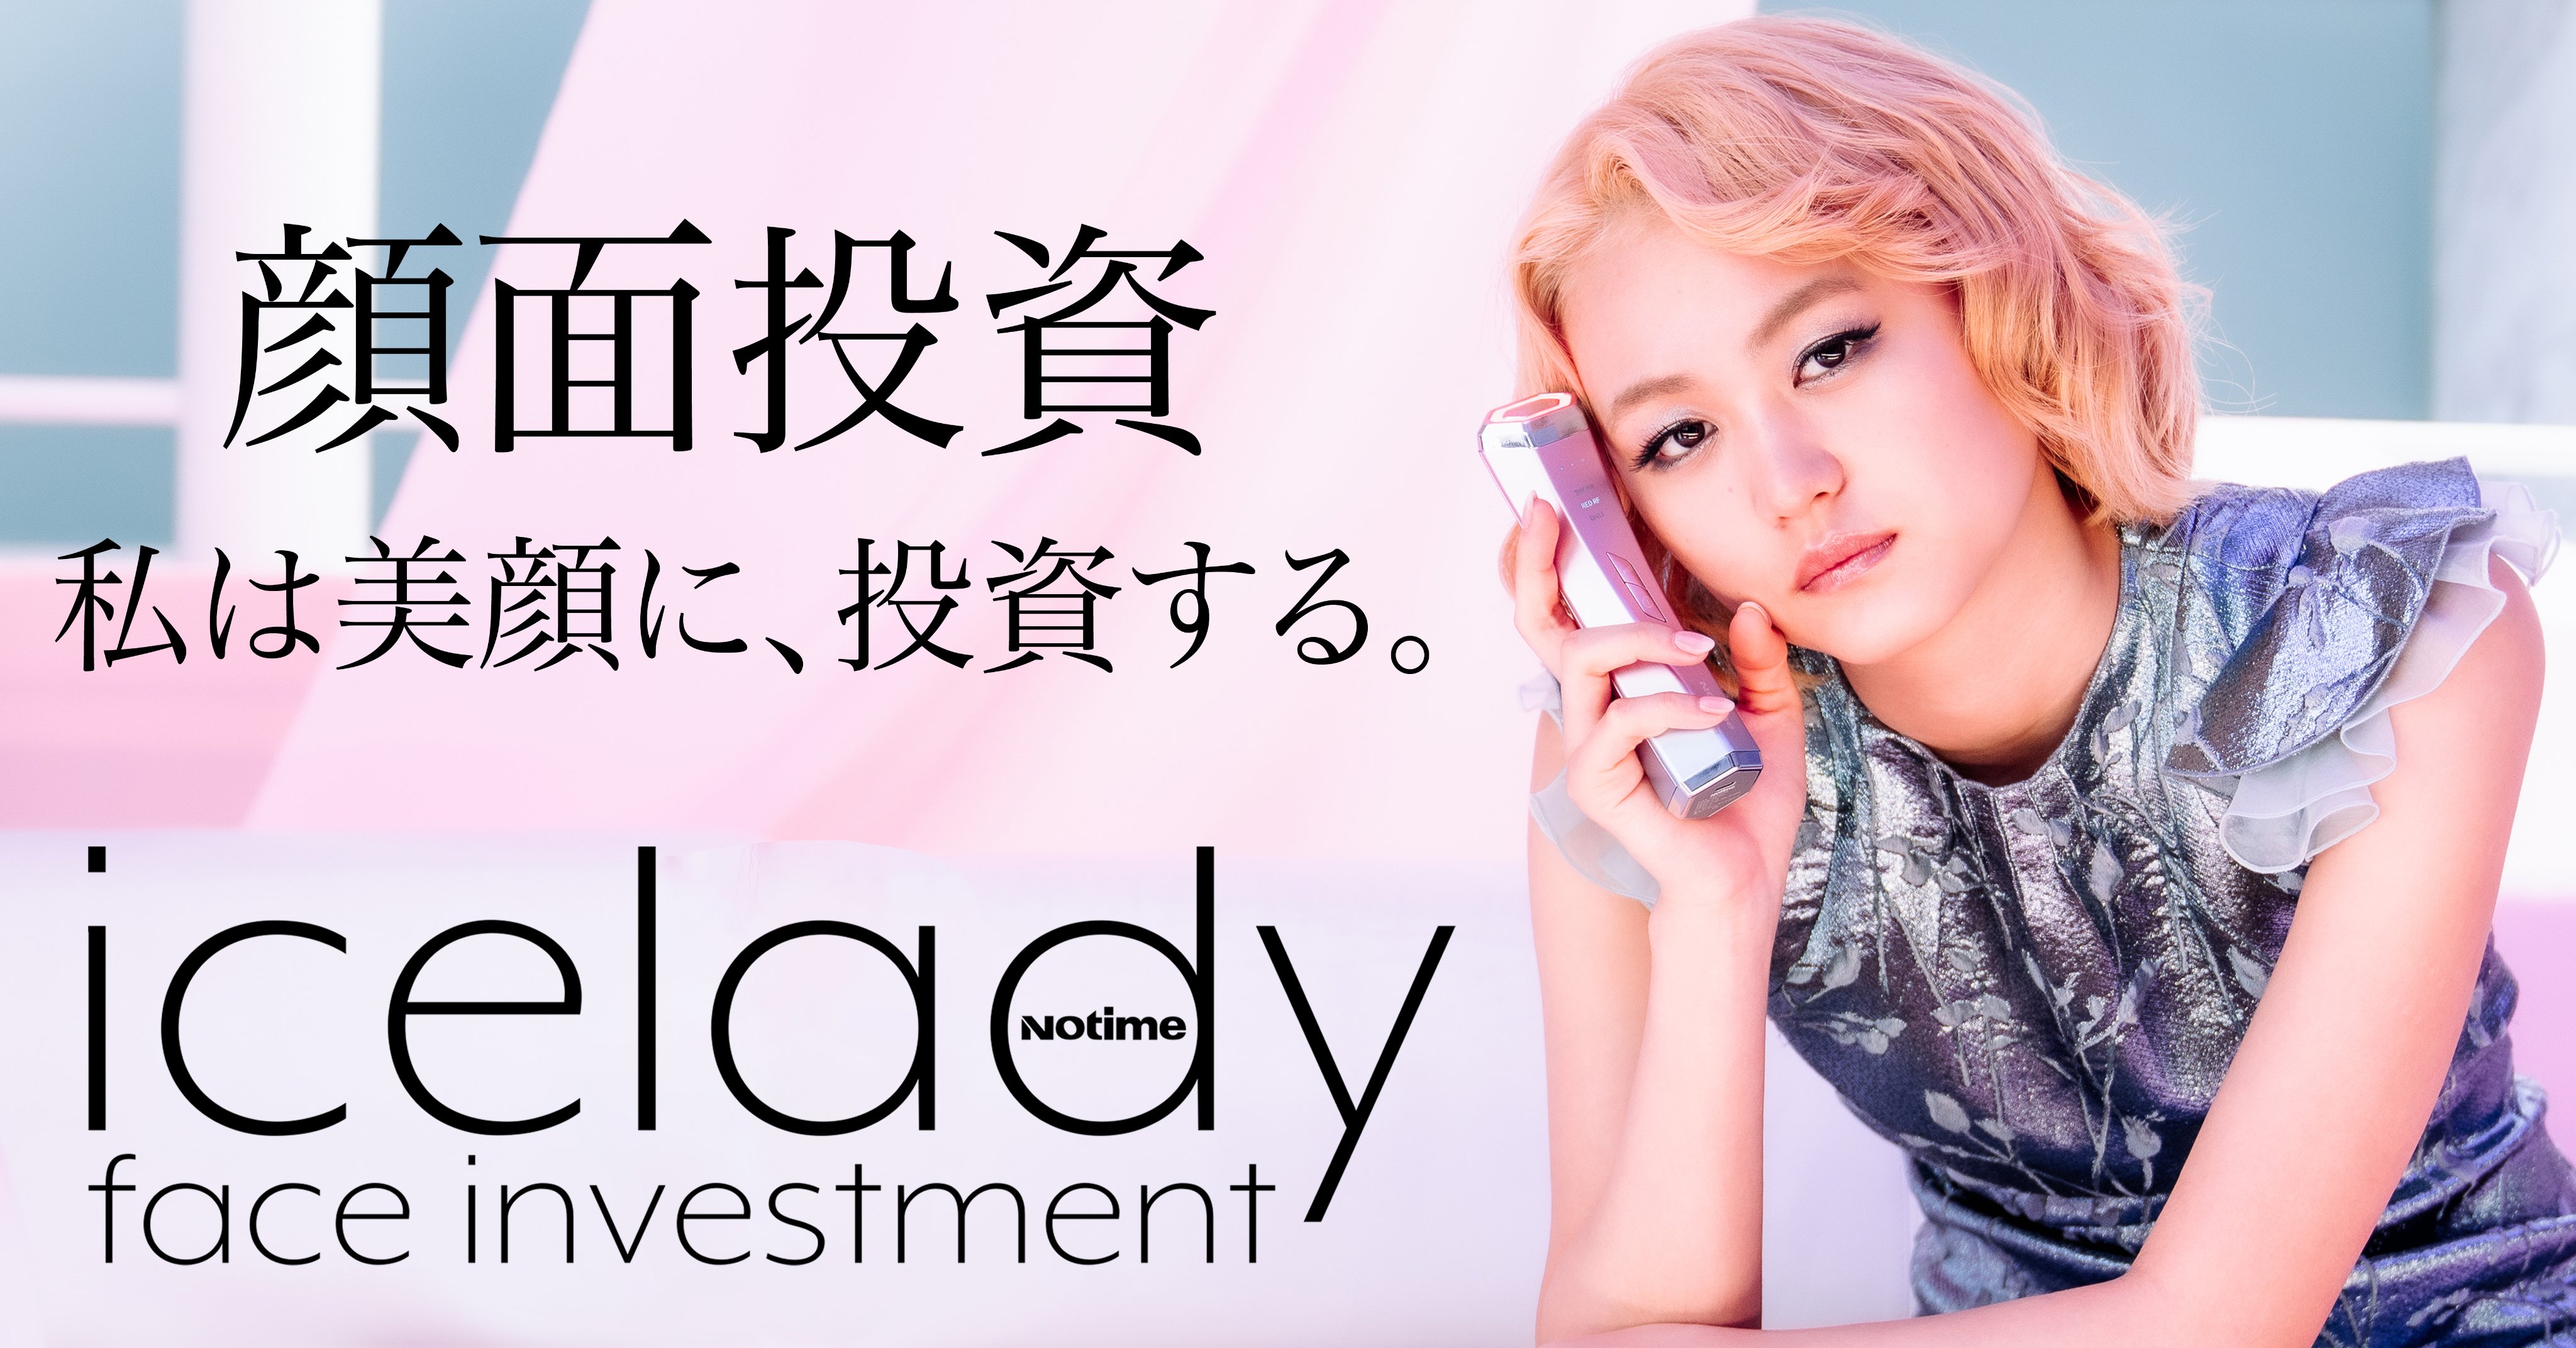 美容/健康 美容機器 icelady face investment (@faceinvestment) / Twitter